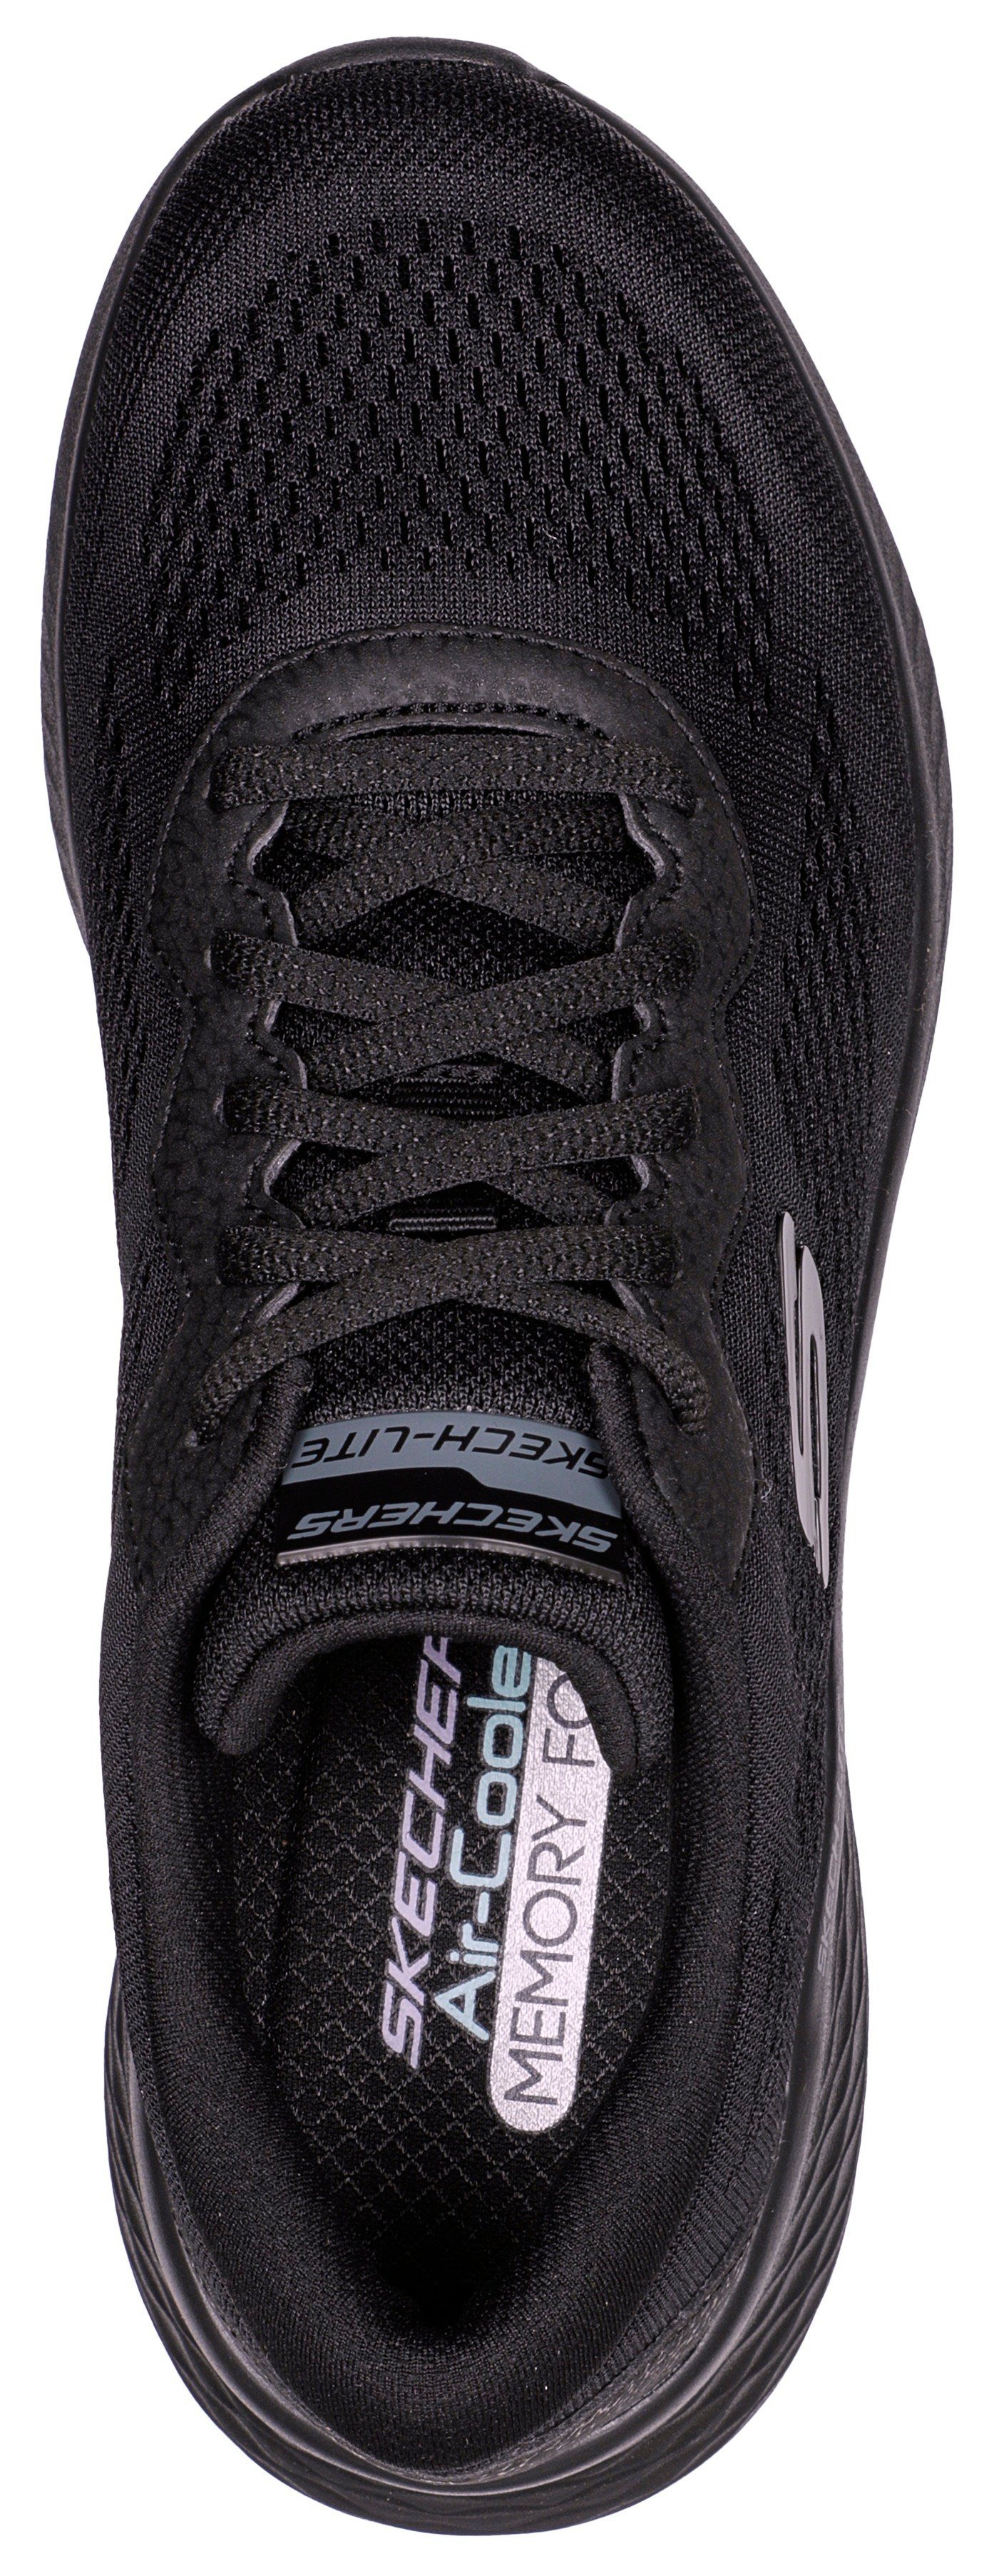 Skechers SKECH-LITE PRO geeignet schwarz für Sneaker - Maschinenwäsche